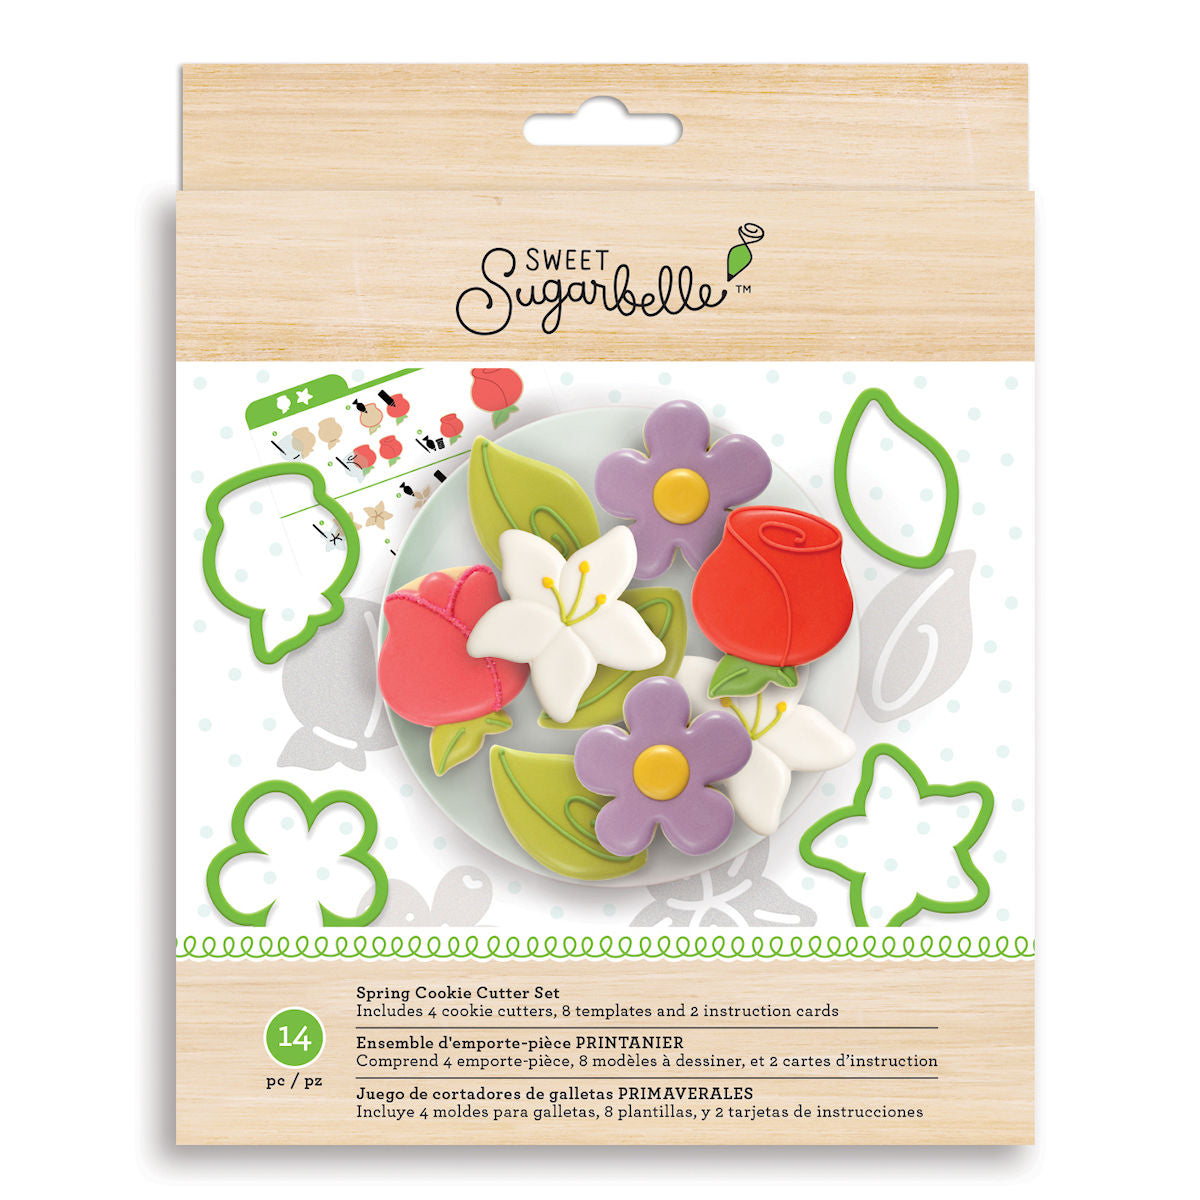 Sweet Sugarbelle Spring Cookie Cutter Kit | www.sprinklebeesweet.com